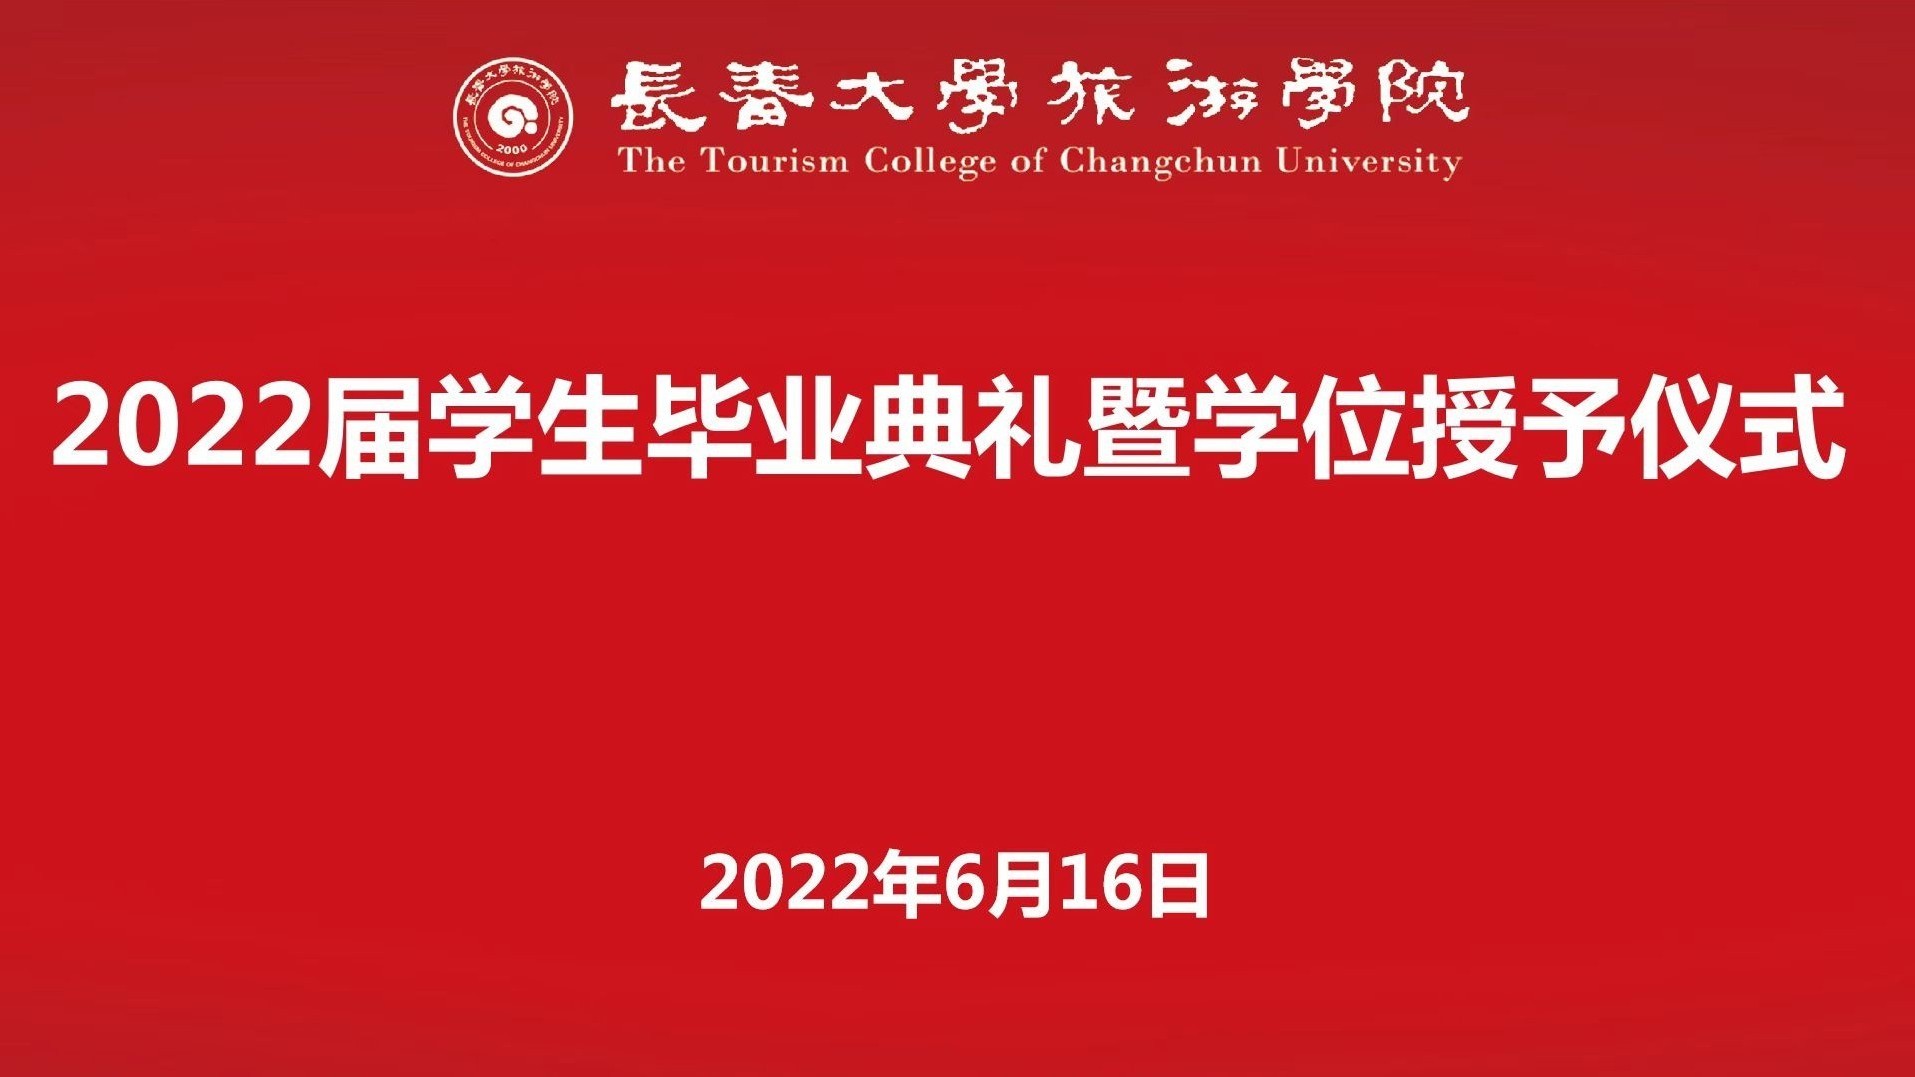 长春大学旅游学院2022届学生毕业典礼暨学位授予仪式